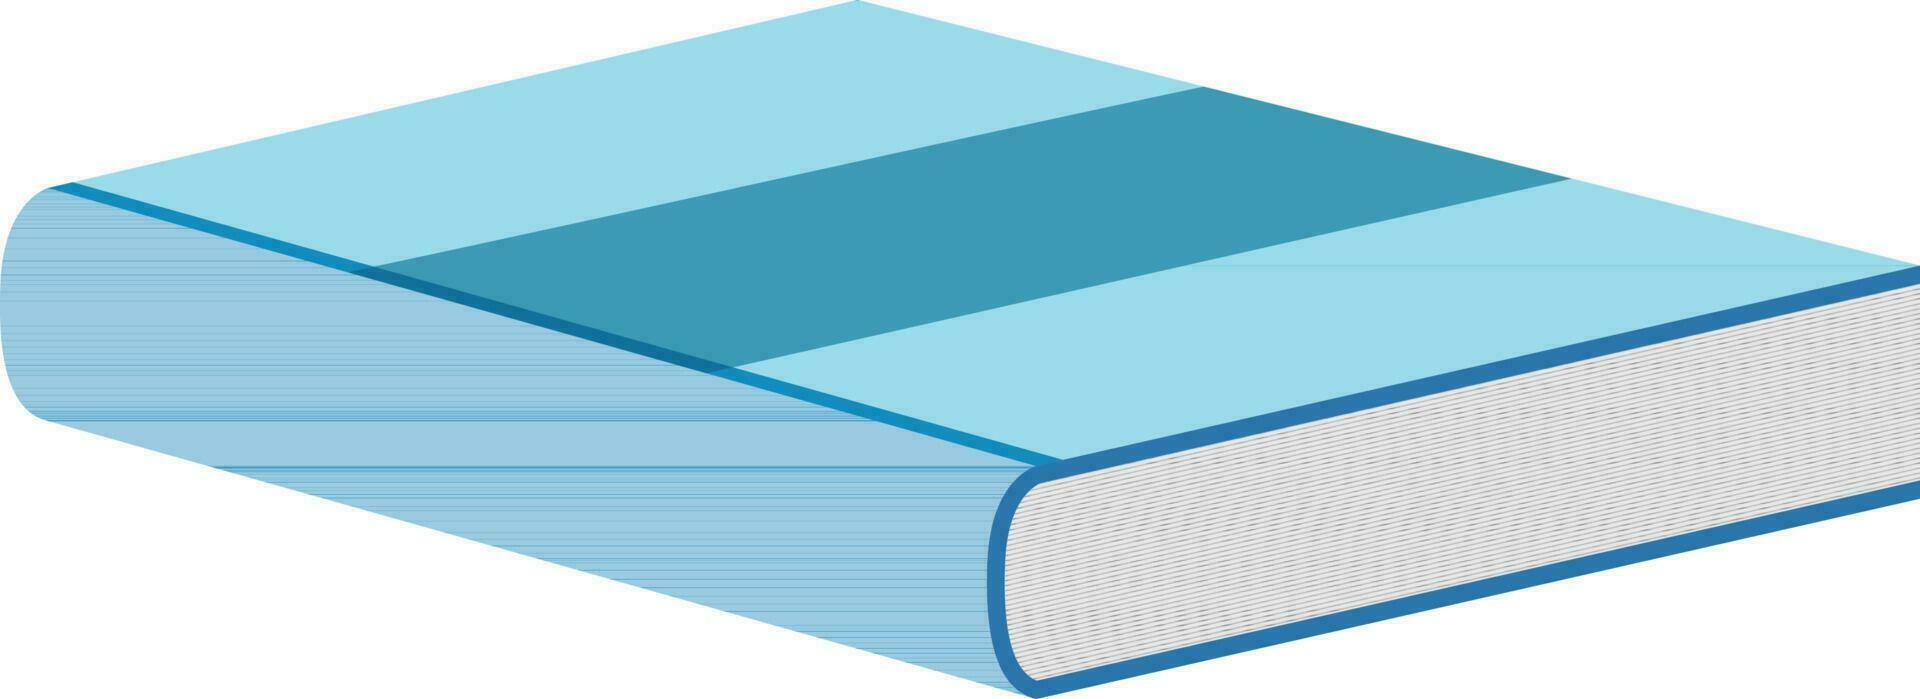 ilustração do fechadas livro dentro céu azul cor. vetor